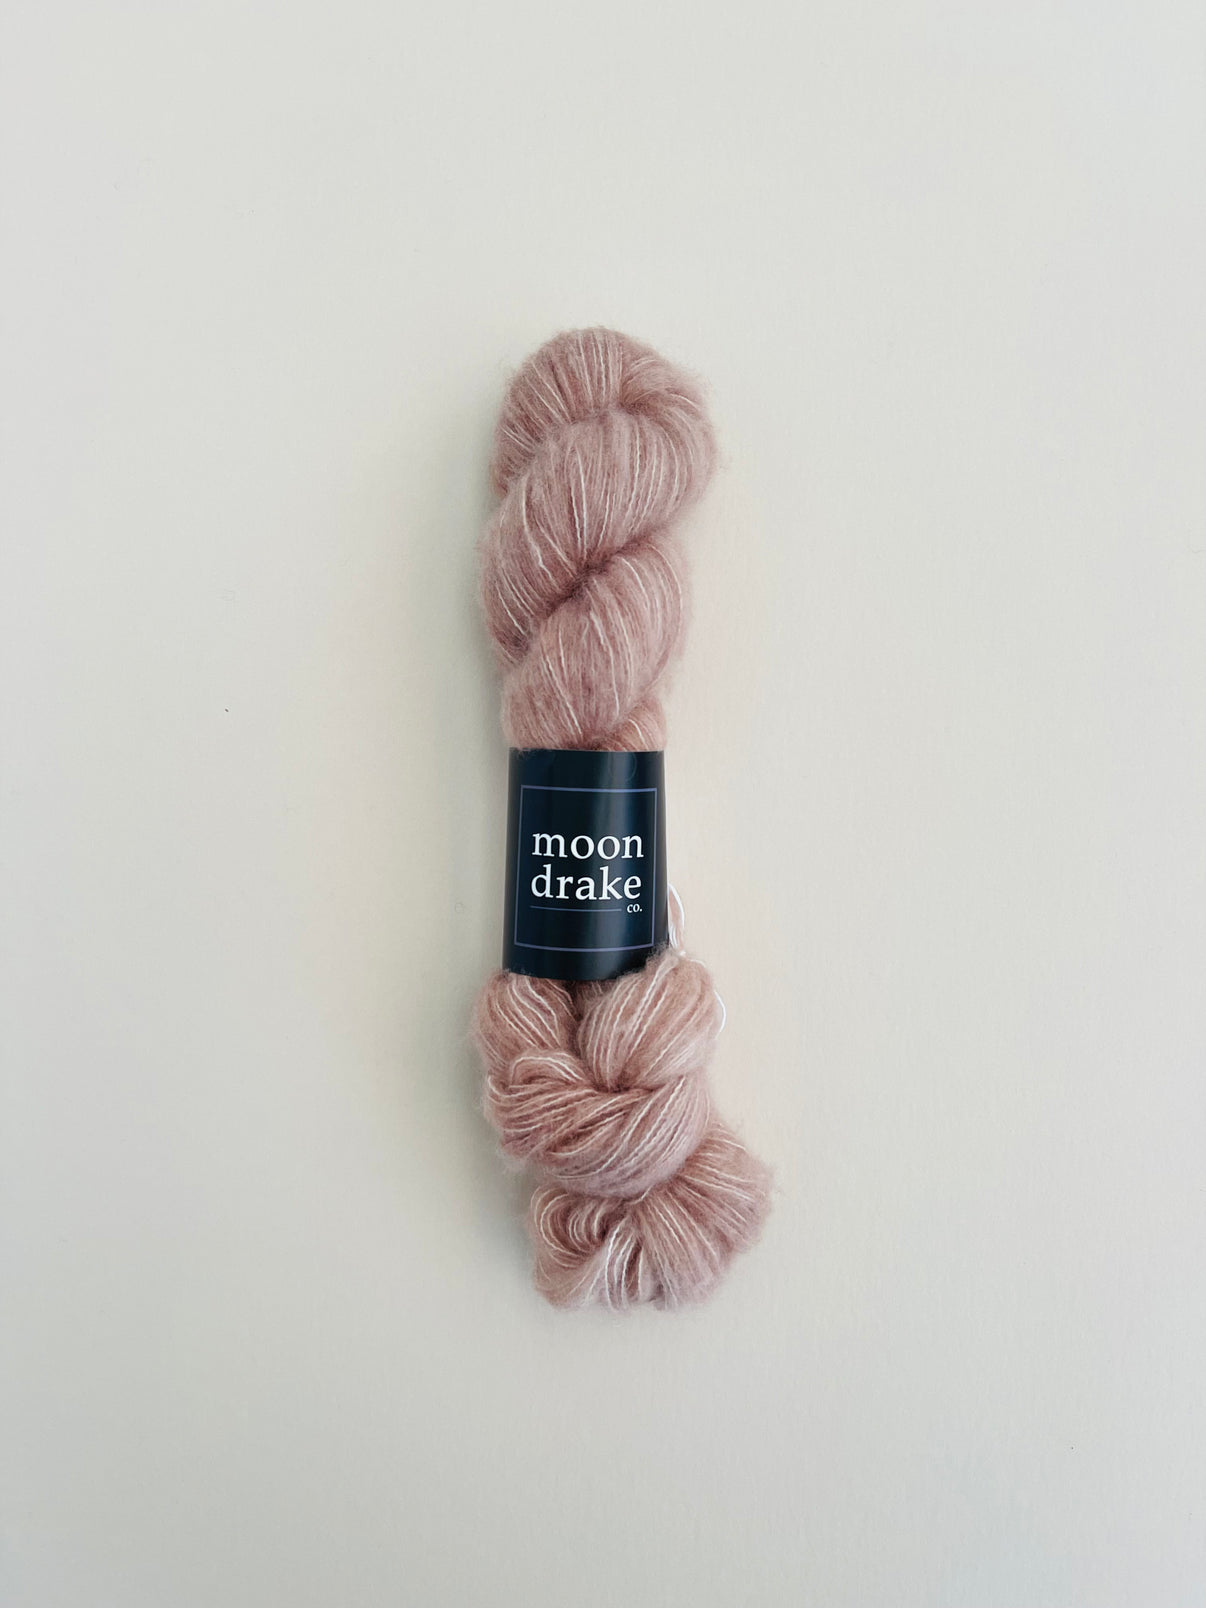 A warm neutral skein of fuzzy fingering weight yarn.